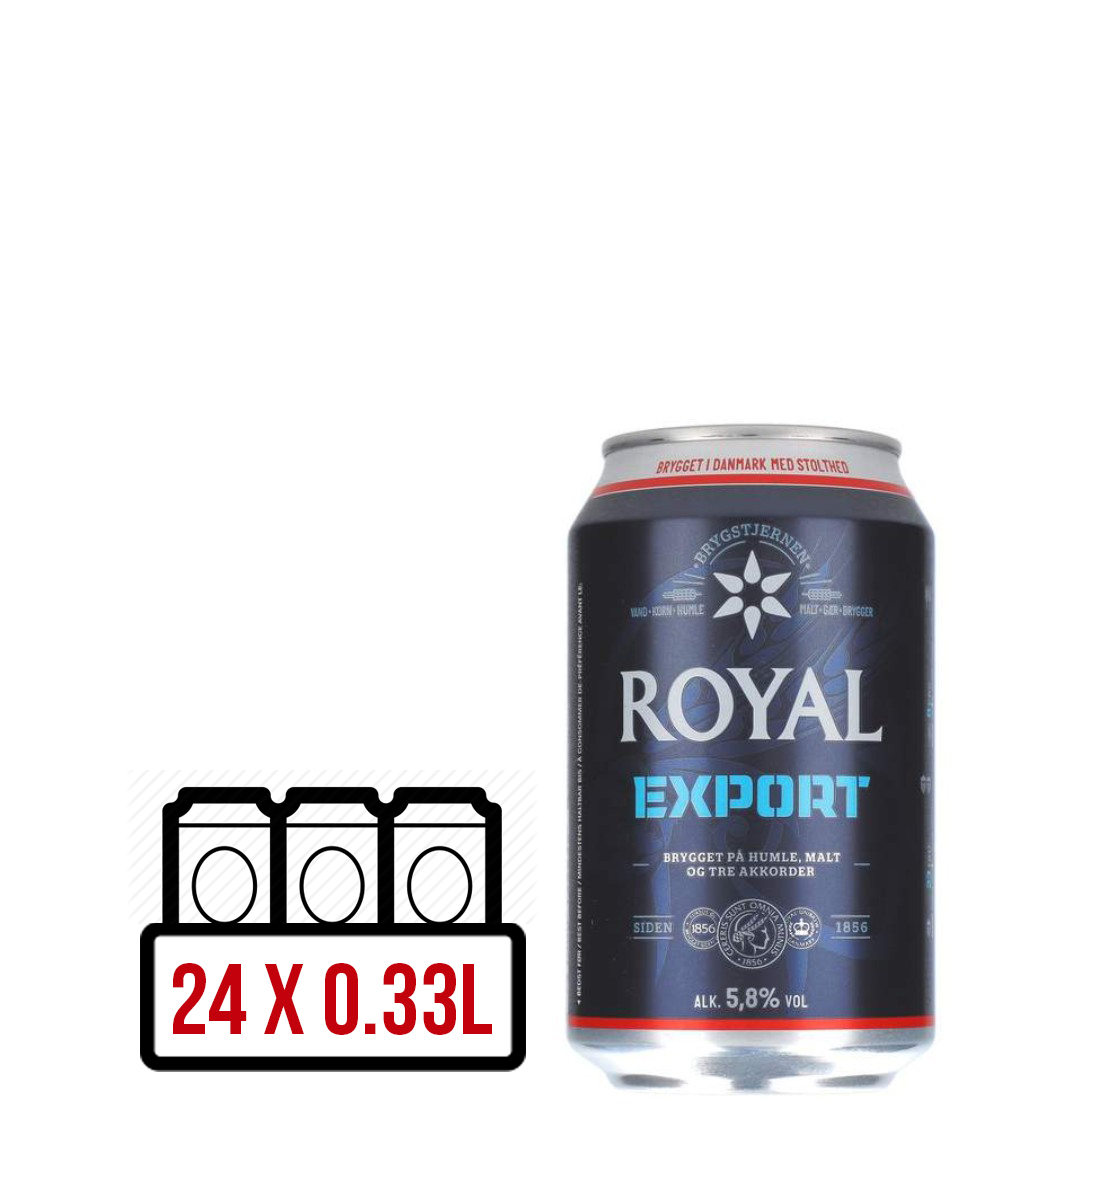 Royal Export BAX 24 dz. x 0.33L 0.33L